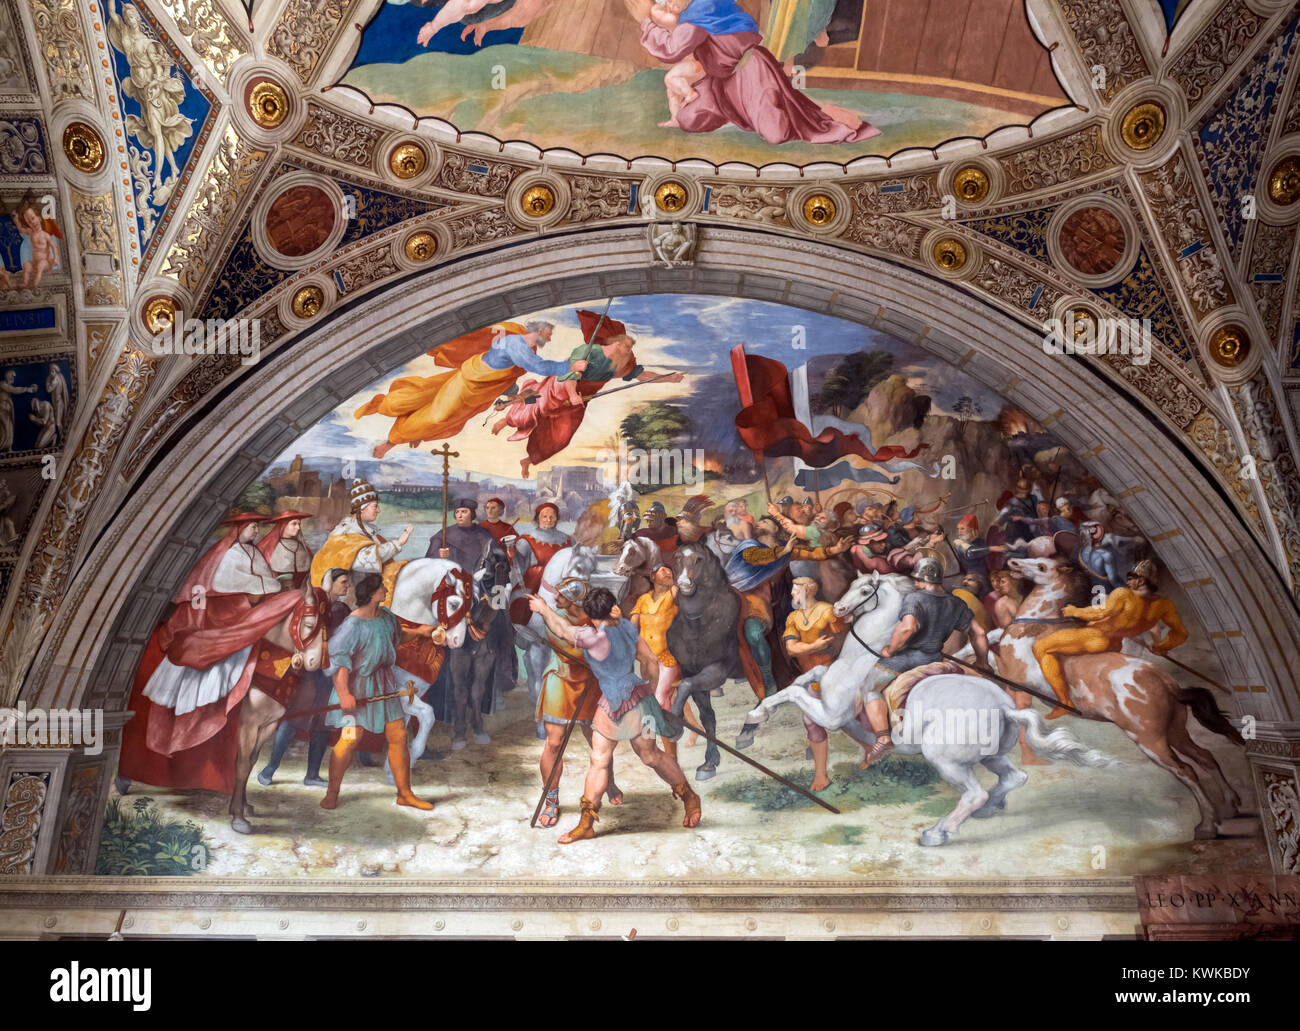 Fresko berechtigt, Begegnung von Leo der Große mit Attila von Raphael (Raffaello Sanzio da Urbino, 1483-1520), c. 1513-21, Zimmer von Heliodor, Raphael's Zimmer, Vatikanische Museen, Rom, Italien Stockfoto